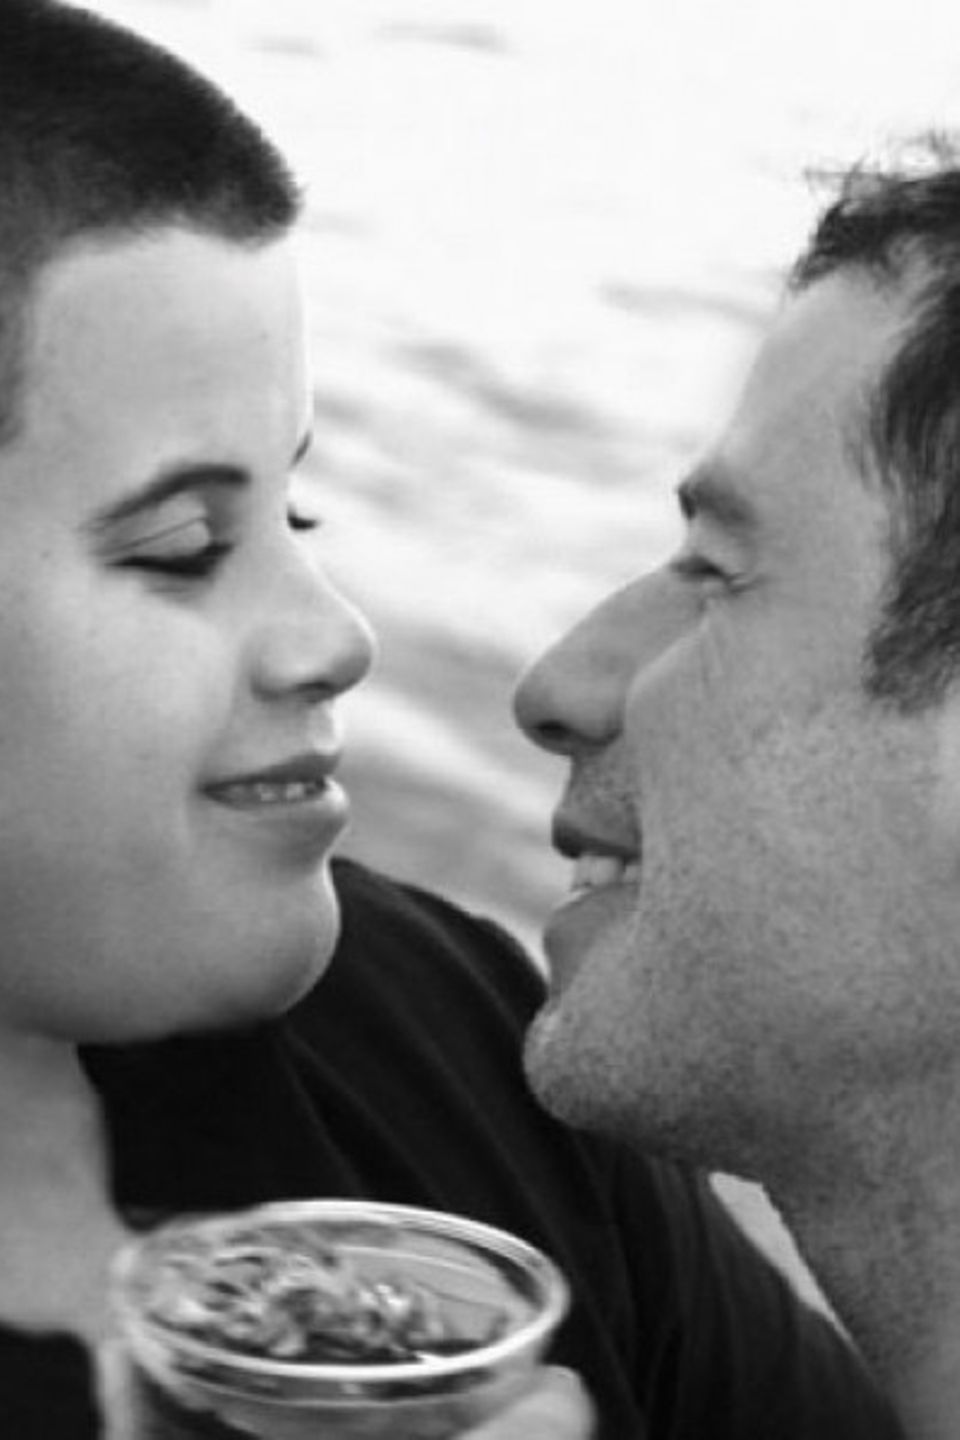 13. April 2020 Mit einem emotionalen Post erinnert John Travolta an den Geburtstag seines vor zehn Jahren verstorbenen Sohnes Jett. Der damals 16-Jährige verunglückte nach einem Krampfanfall tödlich. Später gaben Travolta und seine Frau Kelly Preston bekannt, dass bereits im Alter von zwei Jahren bei ihrem Sohn das Kawasaki-Syndrom diagnostiziert wurde. John Travolta scheibt berührend auf Instagram: "Happy Birthday Jetty! Wir lieben dich".